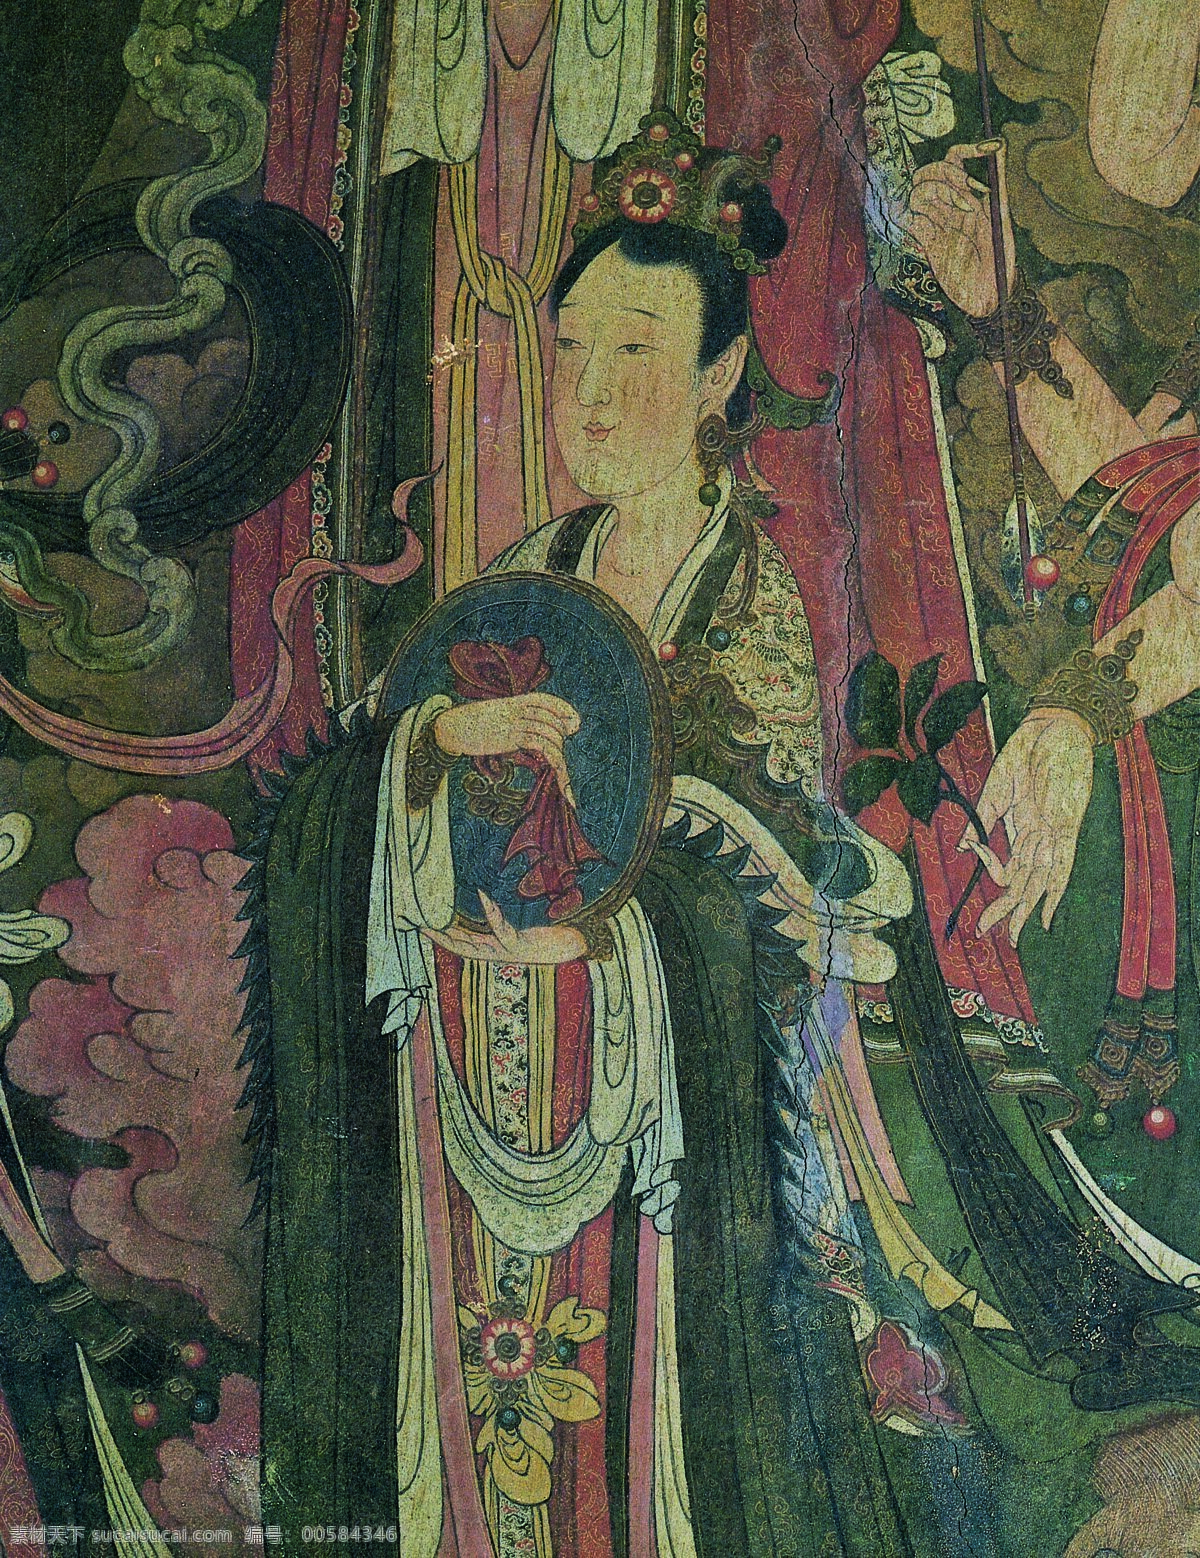 法海 寺 壁画 天女 45天女 设计素材 中国古典 壁画世界 书画美术 灰色